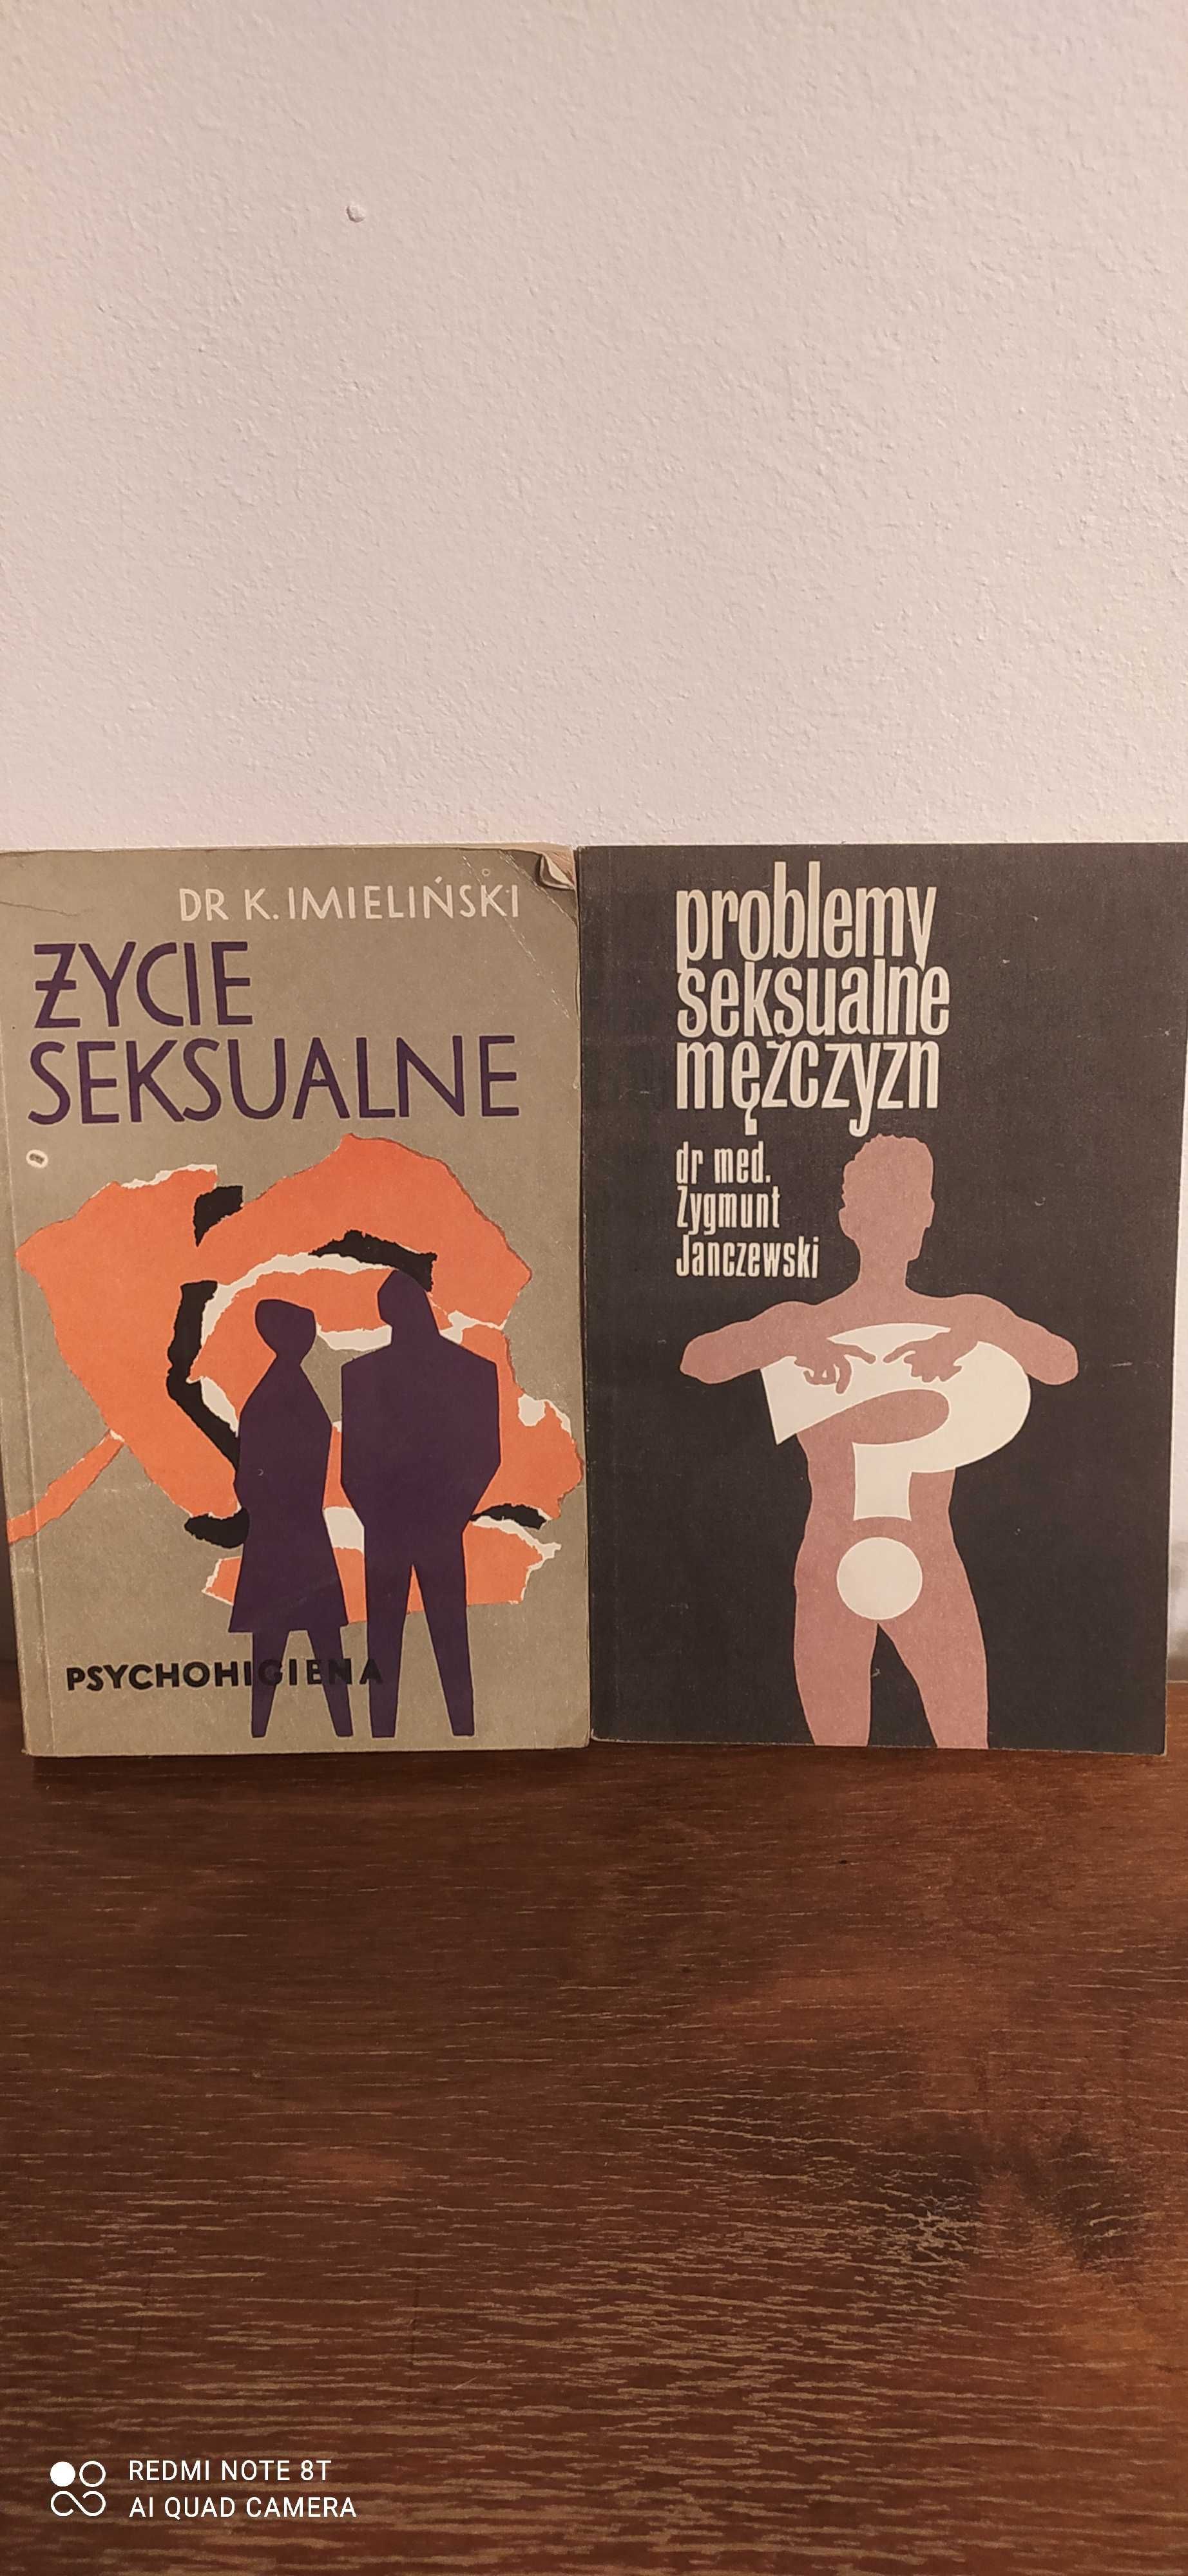 Janczewski Problemy seksualne mężczyzn, Imieliński Życie seksualne